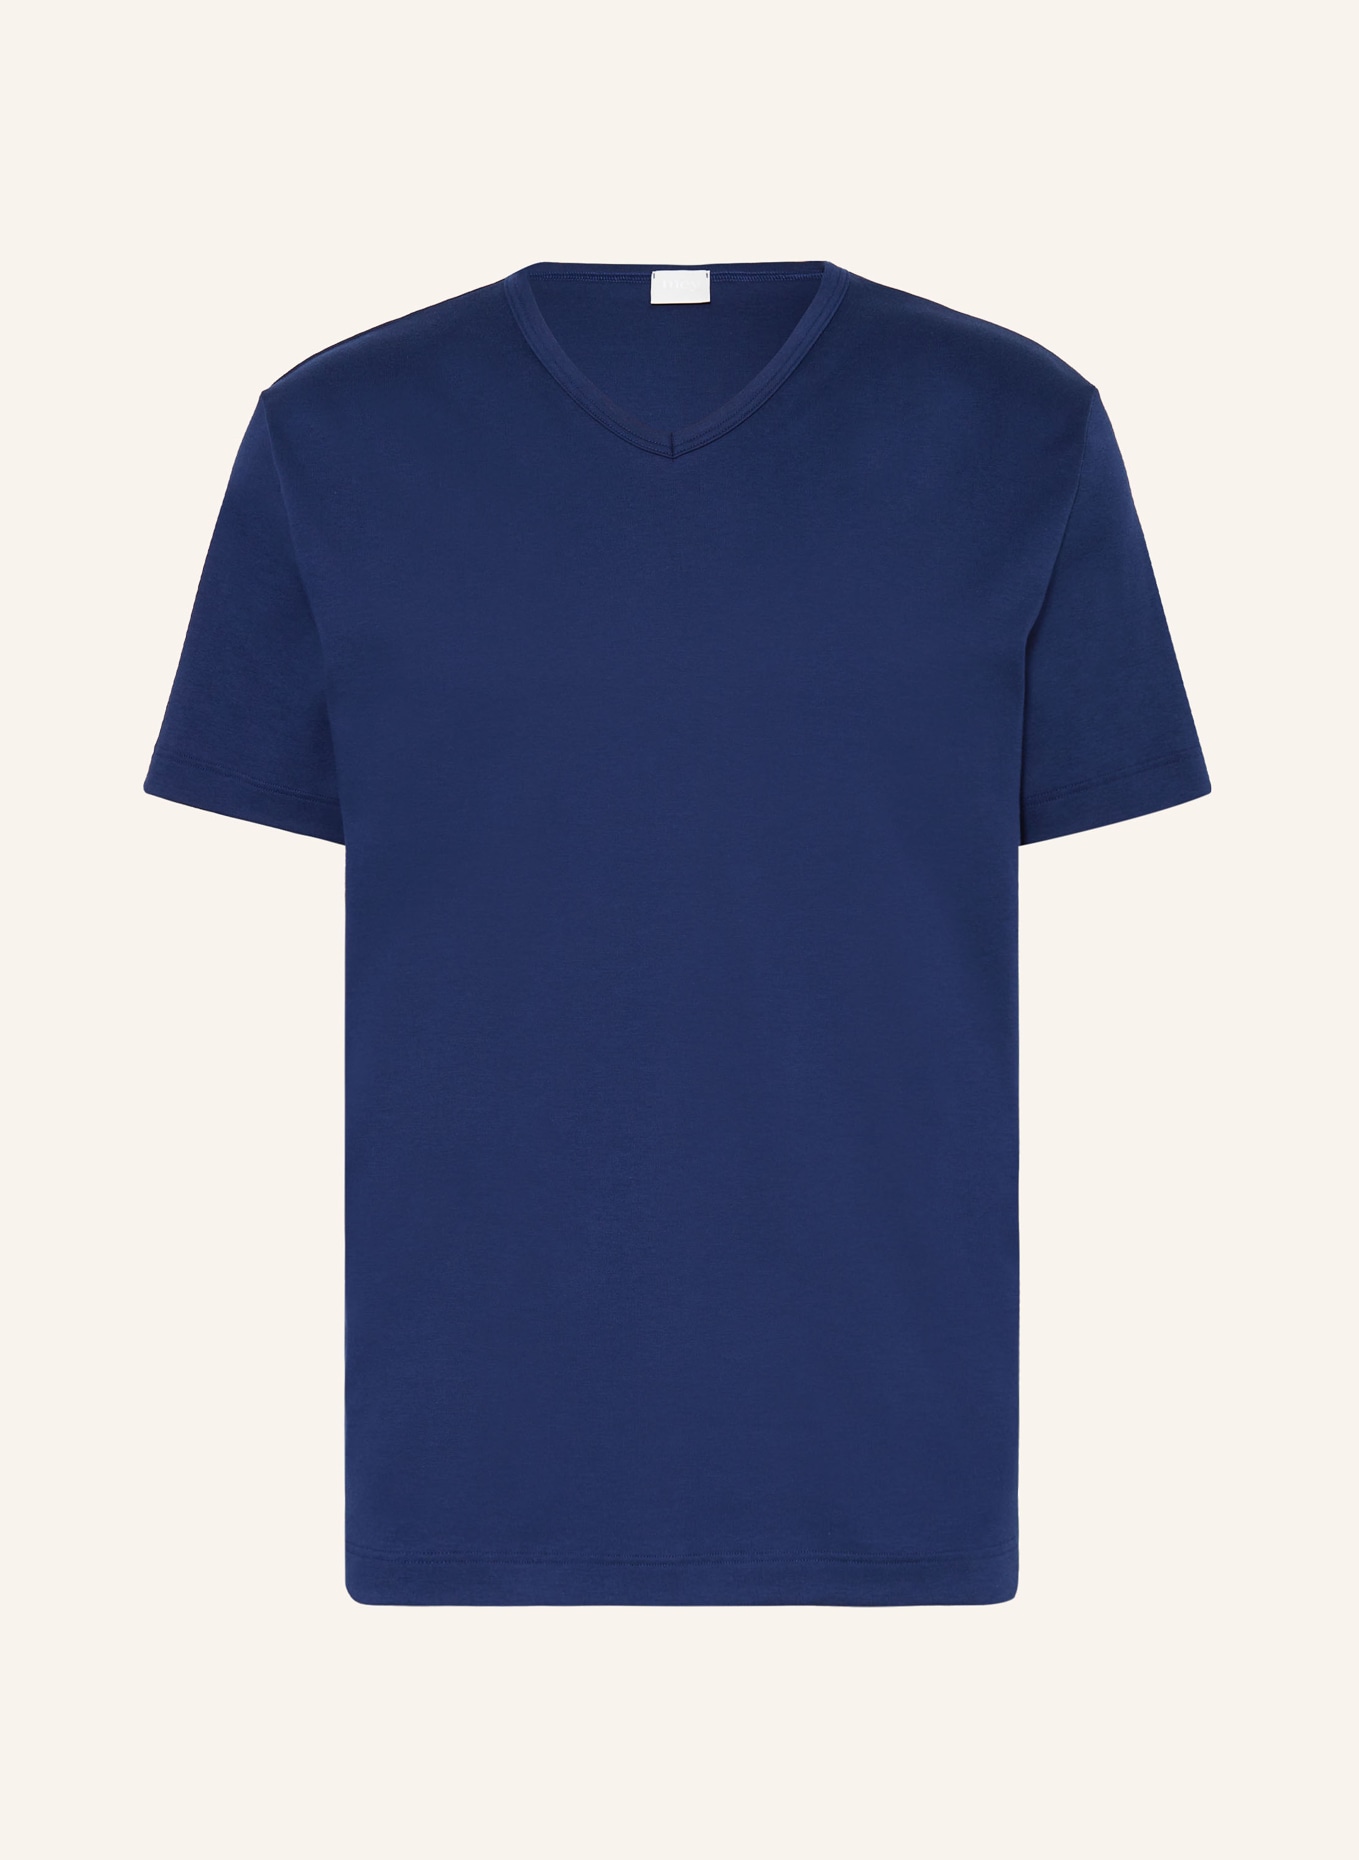 mey Pajama shirt series SOLID NIGHT, Color: DARK BLUE (Image 1)